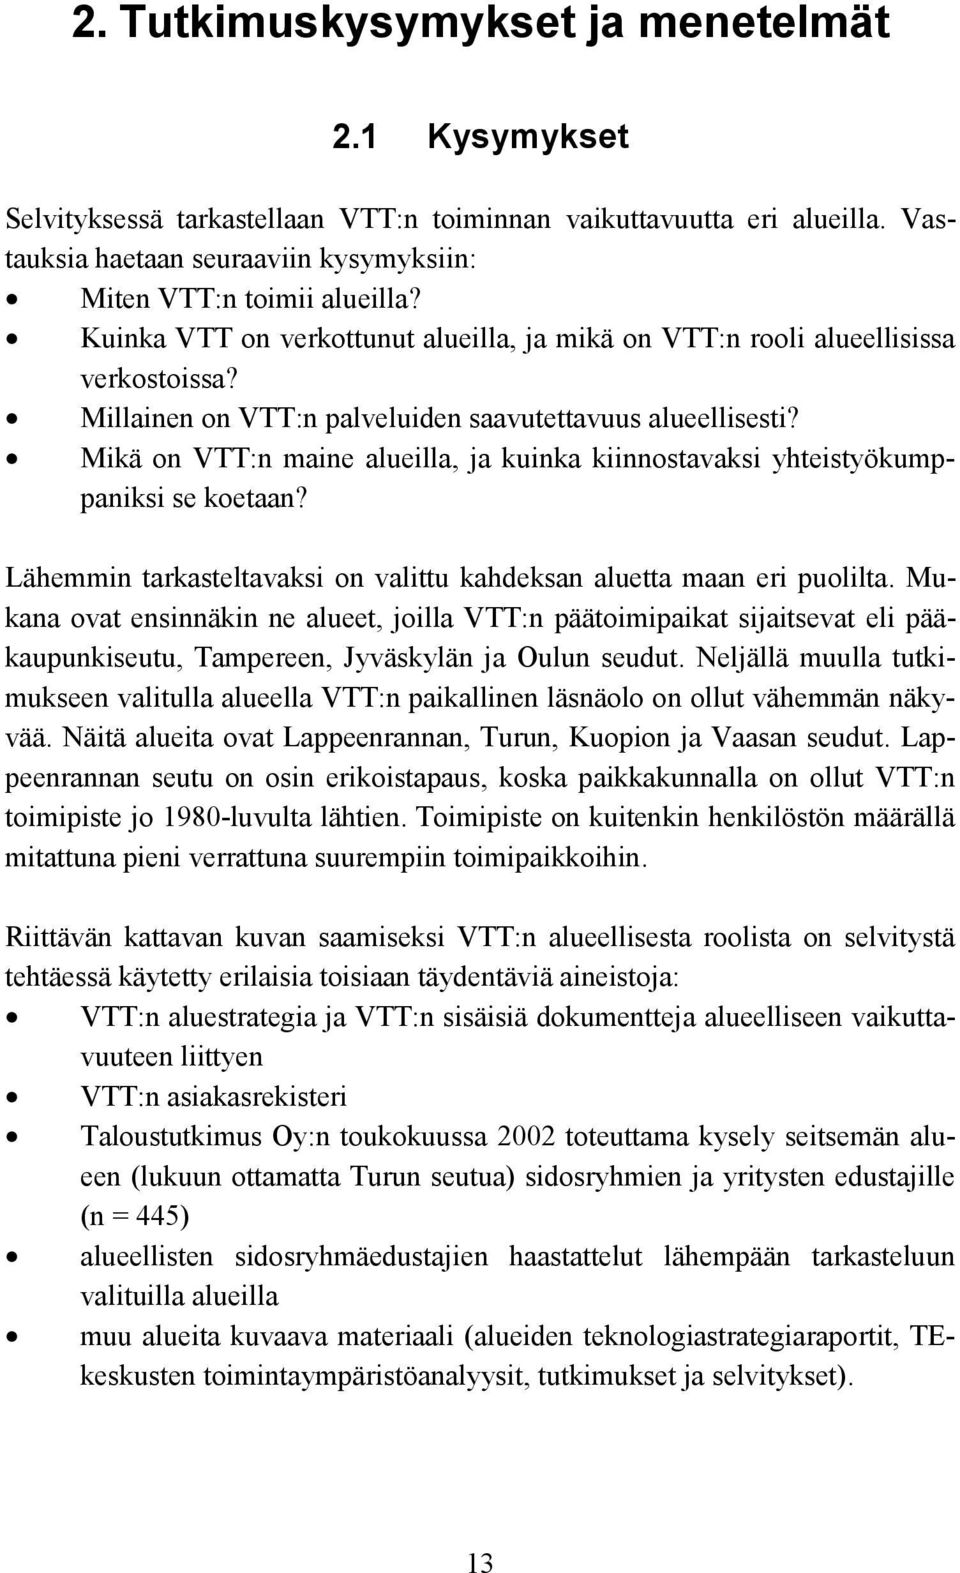 Mikä on VTT:n maine alueilla, ja kuinka kiinnostavaksi yhteistyökumppaniksi se koetaan? Lähemmin tarkasteltavaksi on valittu kahdeksan aluetta maan eri puolilta.